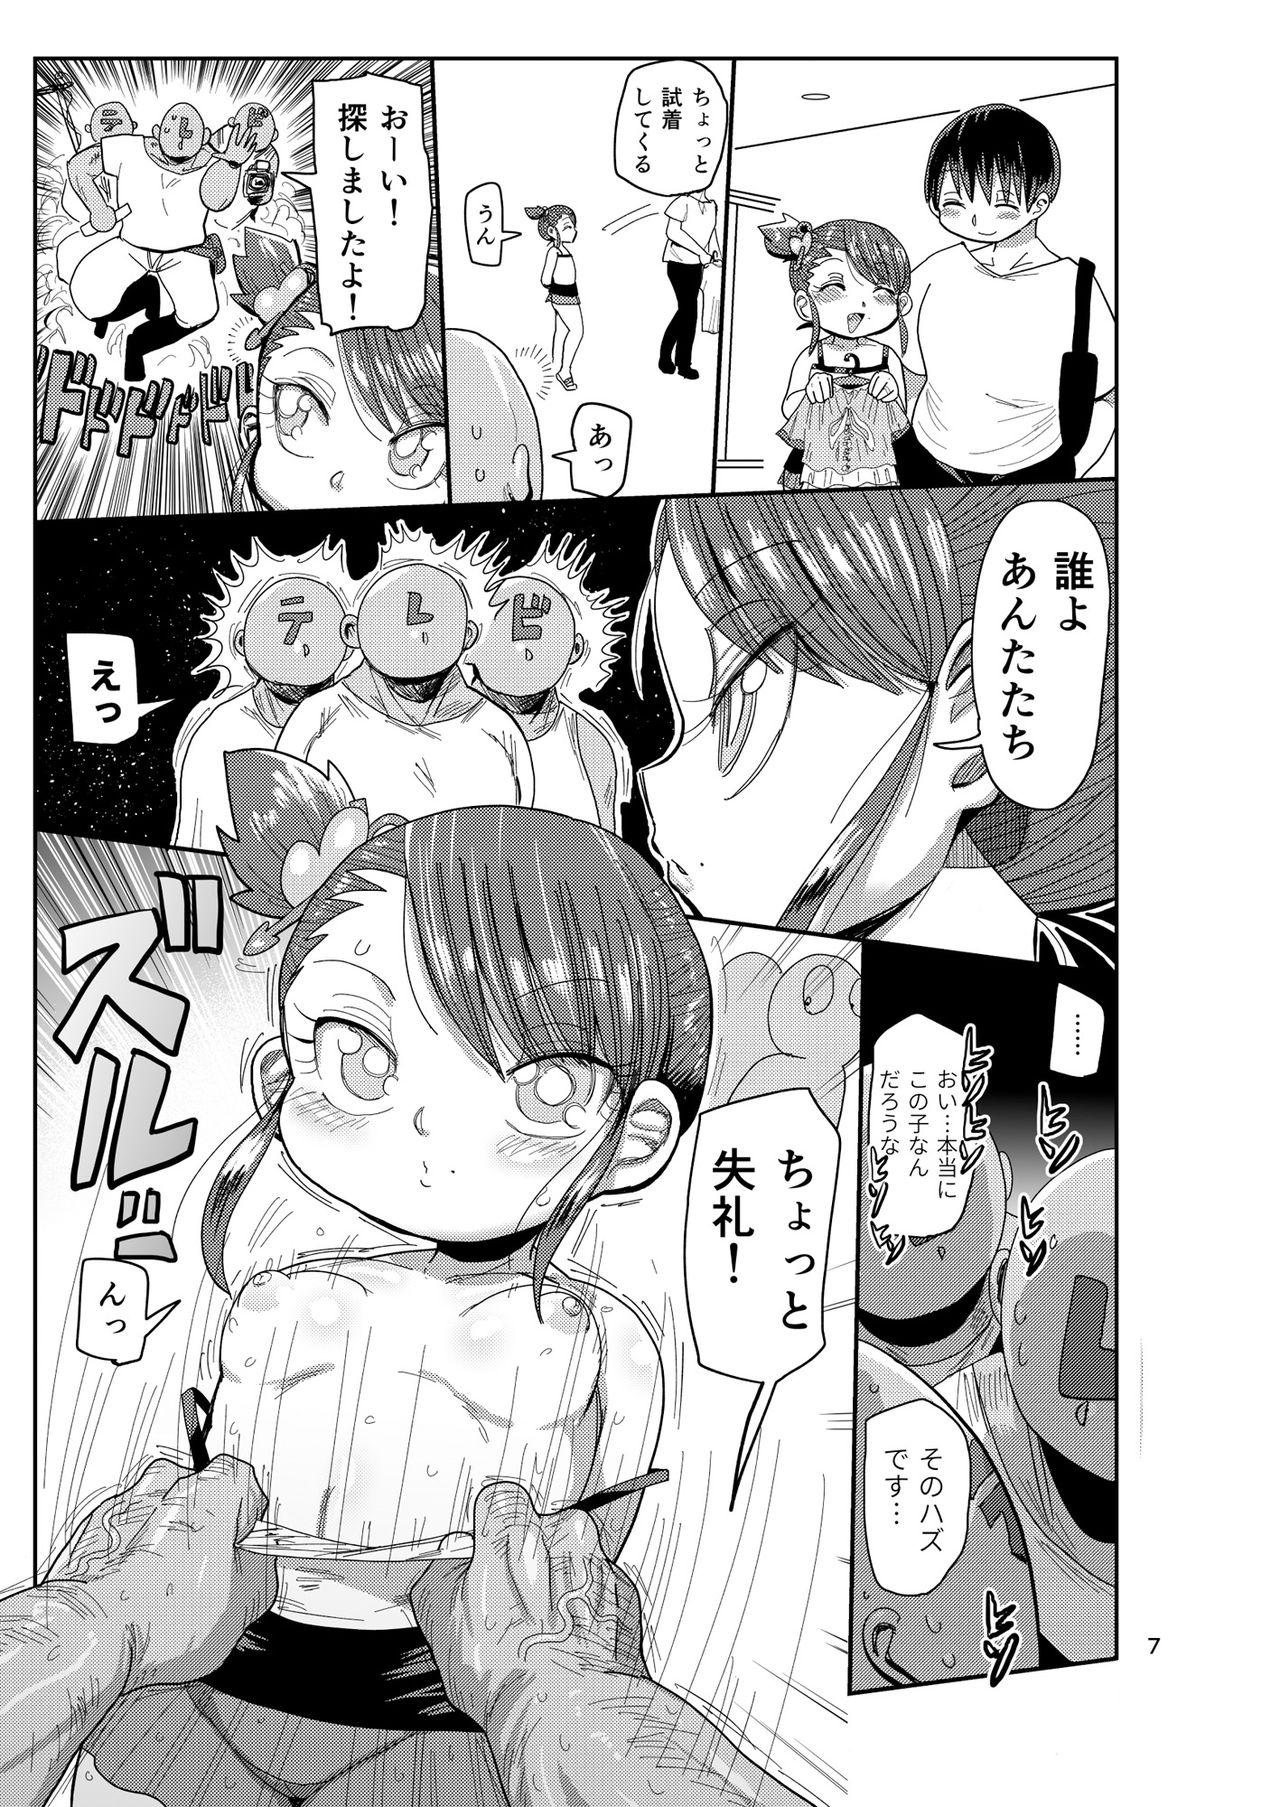 Letsdoeit Watashi no Mawari ni wa Kiken ga Ippai! - Original Mujer - Page 6